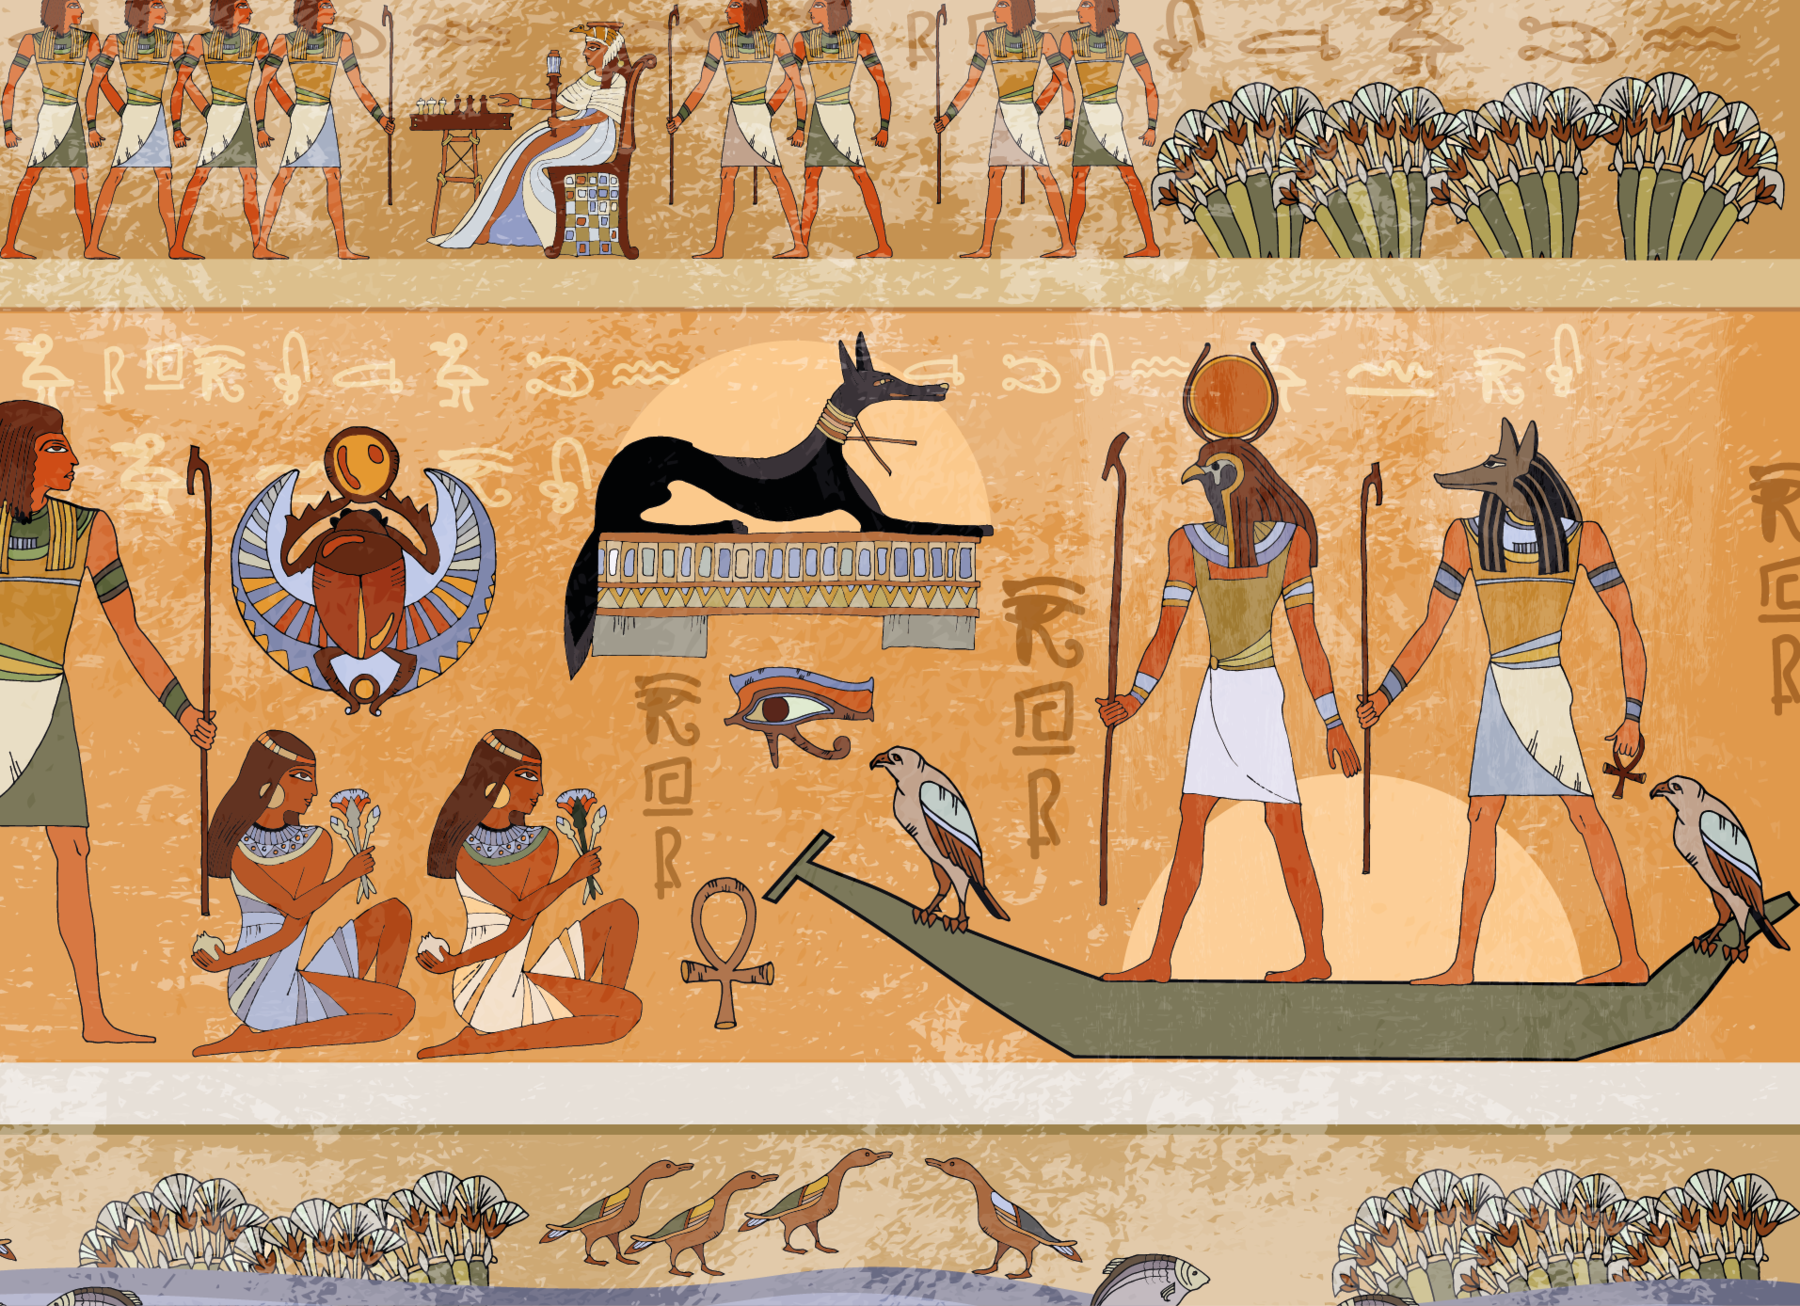 Fotografia. Hieróglifo egípcio em parede de pirâmide. Destaque para uma parede marrom dividida horizontalmente em três cenas. No centro da primeira cena, há uma pessoa com trajes em tons de bege e azul sentada em uma cadeira e diante de um jogo de tabuleiro. À sua frente e atrás dela, há alguns homens em pé; três deles seguram um cetro. Na cena seguinte, à direita, há duas divindades egípcias em pé e segurando um cetro sobre uma embarcação em cujas pontas há duas aves. À sua frente, há duas mulheres sentadas segurando flores e um homem em pé. Nos espaços entre as cenas, há um cachorro preto e alguns símbolos egípcios, como um ankh (cruz com um laço), um olho de Hórus, um escaravelho. As pessoas são representadas com olhos e troncos vistos de frente; cabeças, pernas e pés vistos de perfil. Na última cena, há algumas flores, aves e um peixe.